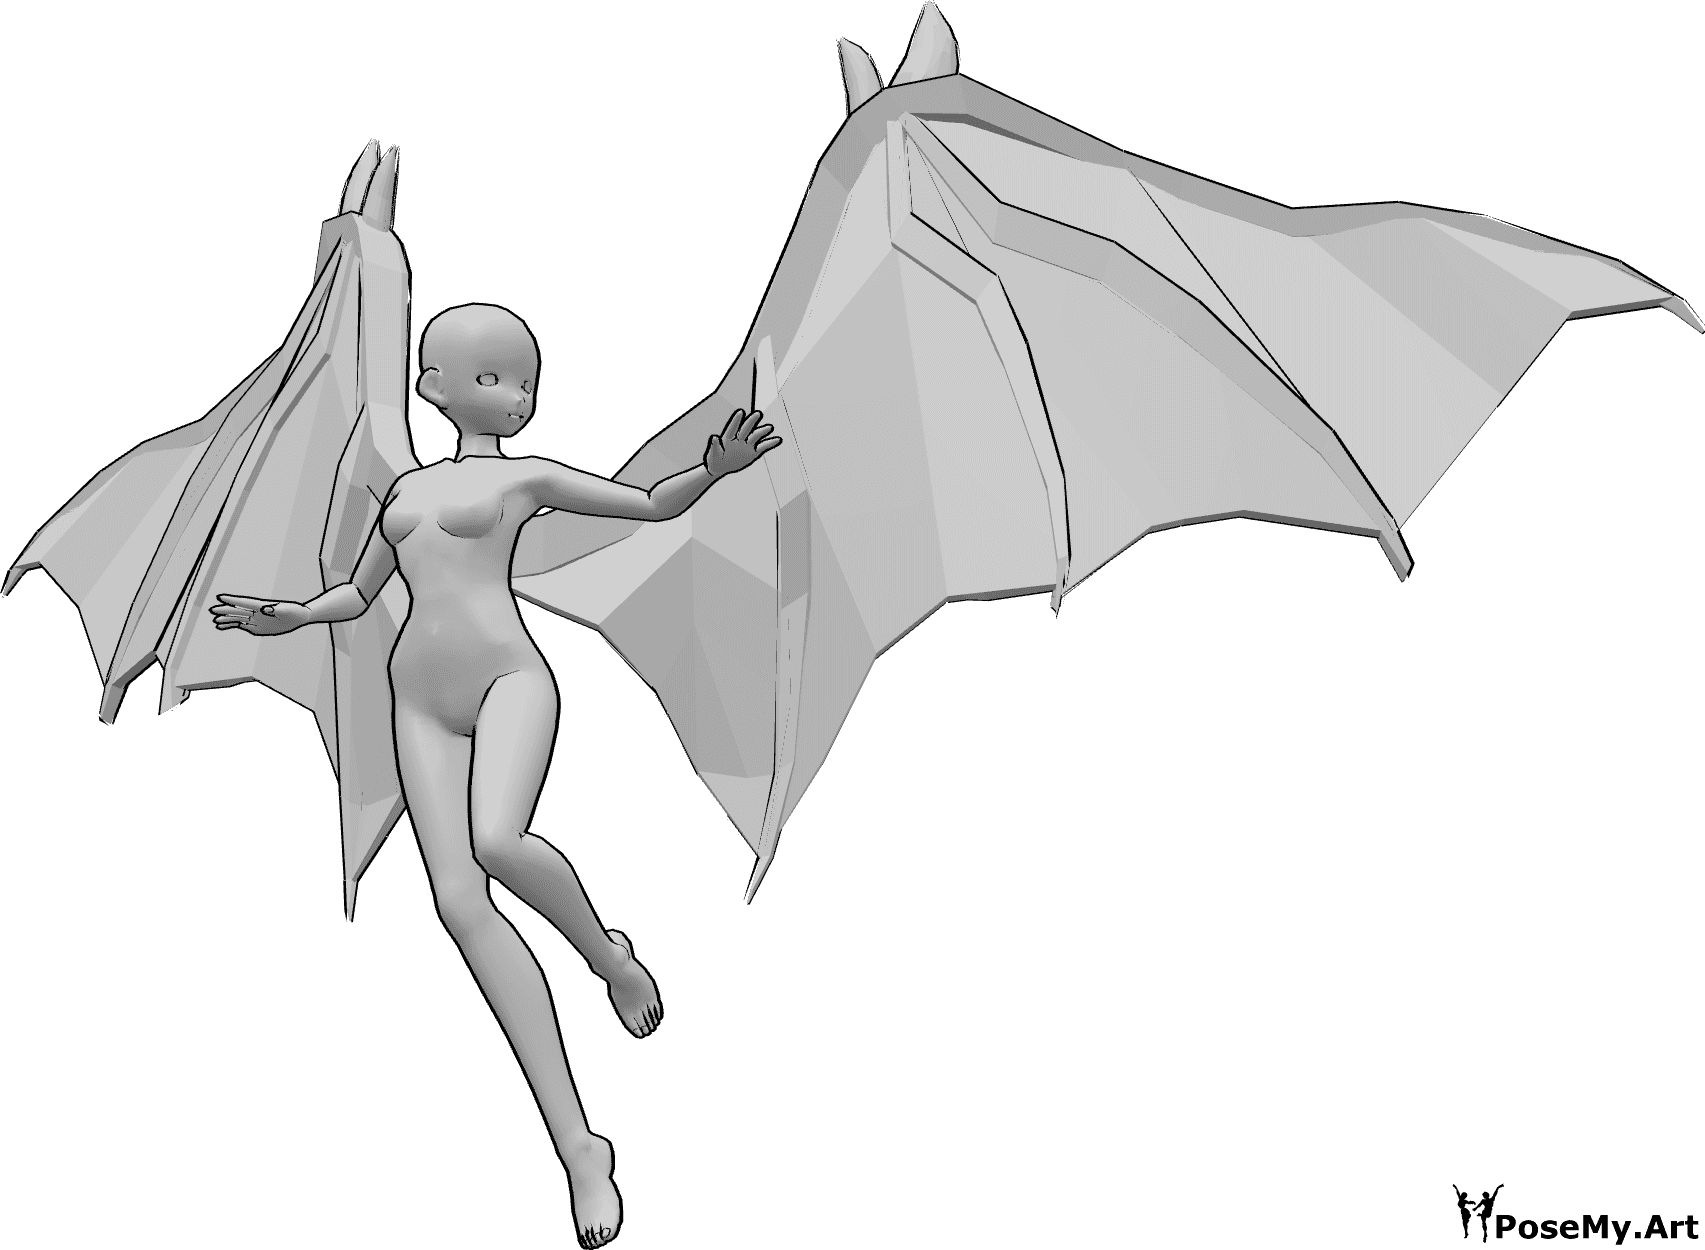 Referência de poses- Pose de voo com aspeto de anime - Anime feminino com asas de diabo está a voar e a olhar para a esquerda